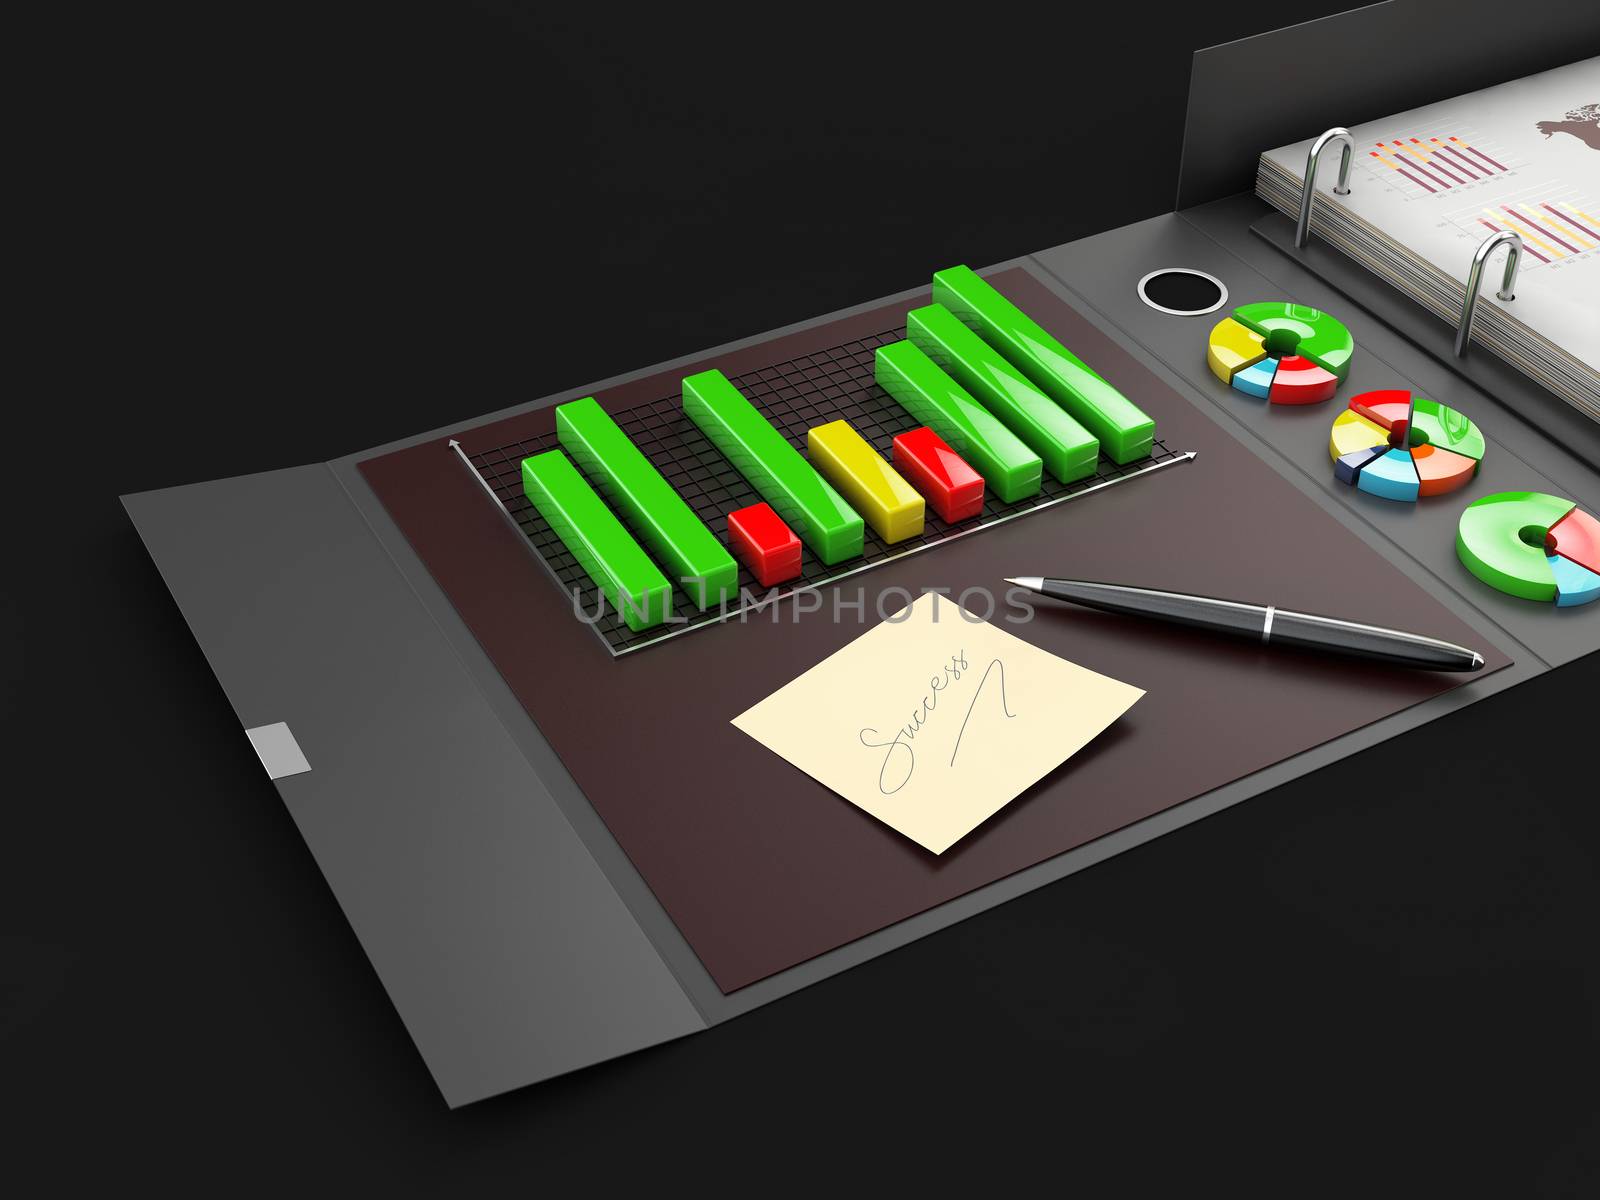 Ring binder folder with charts, 3d Illustration. Office cardboard folder branding presentation.